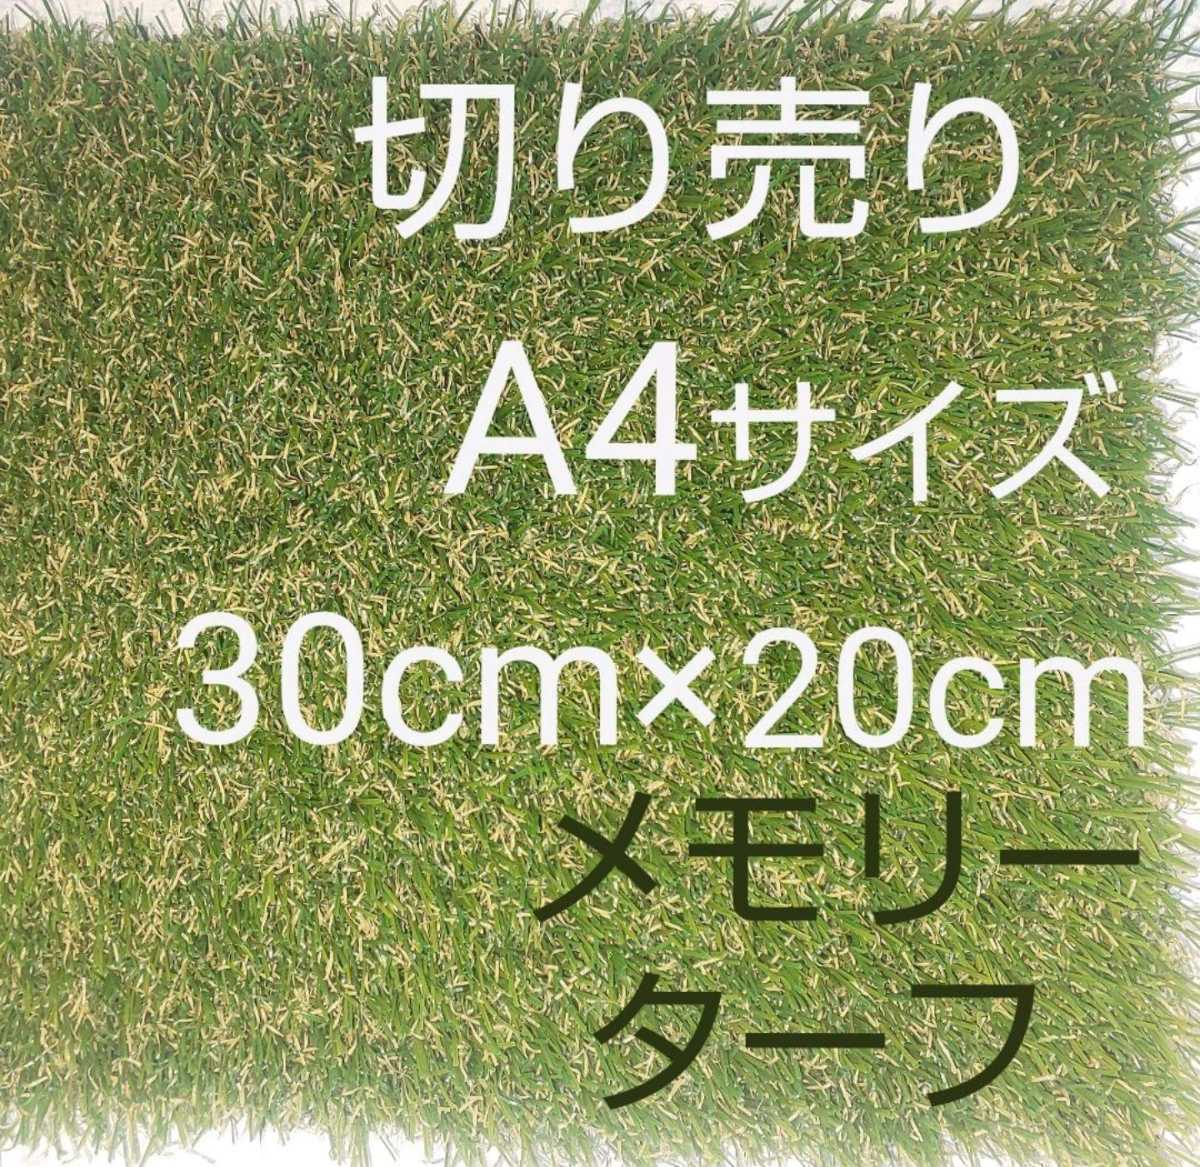 人工芝 国内最高スペック高級形状記憶人工芝28mmメモリーターフ 30cm×20の画像1